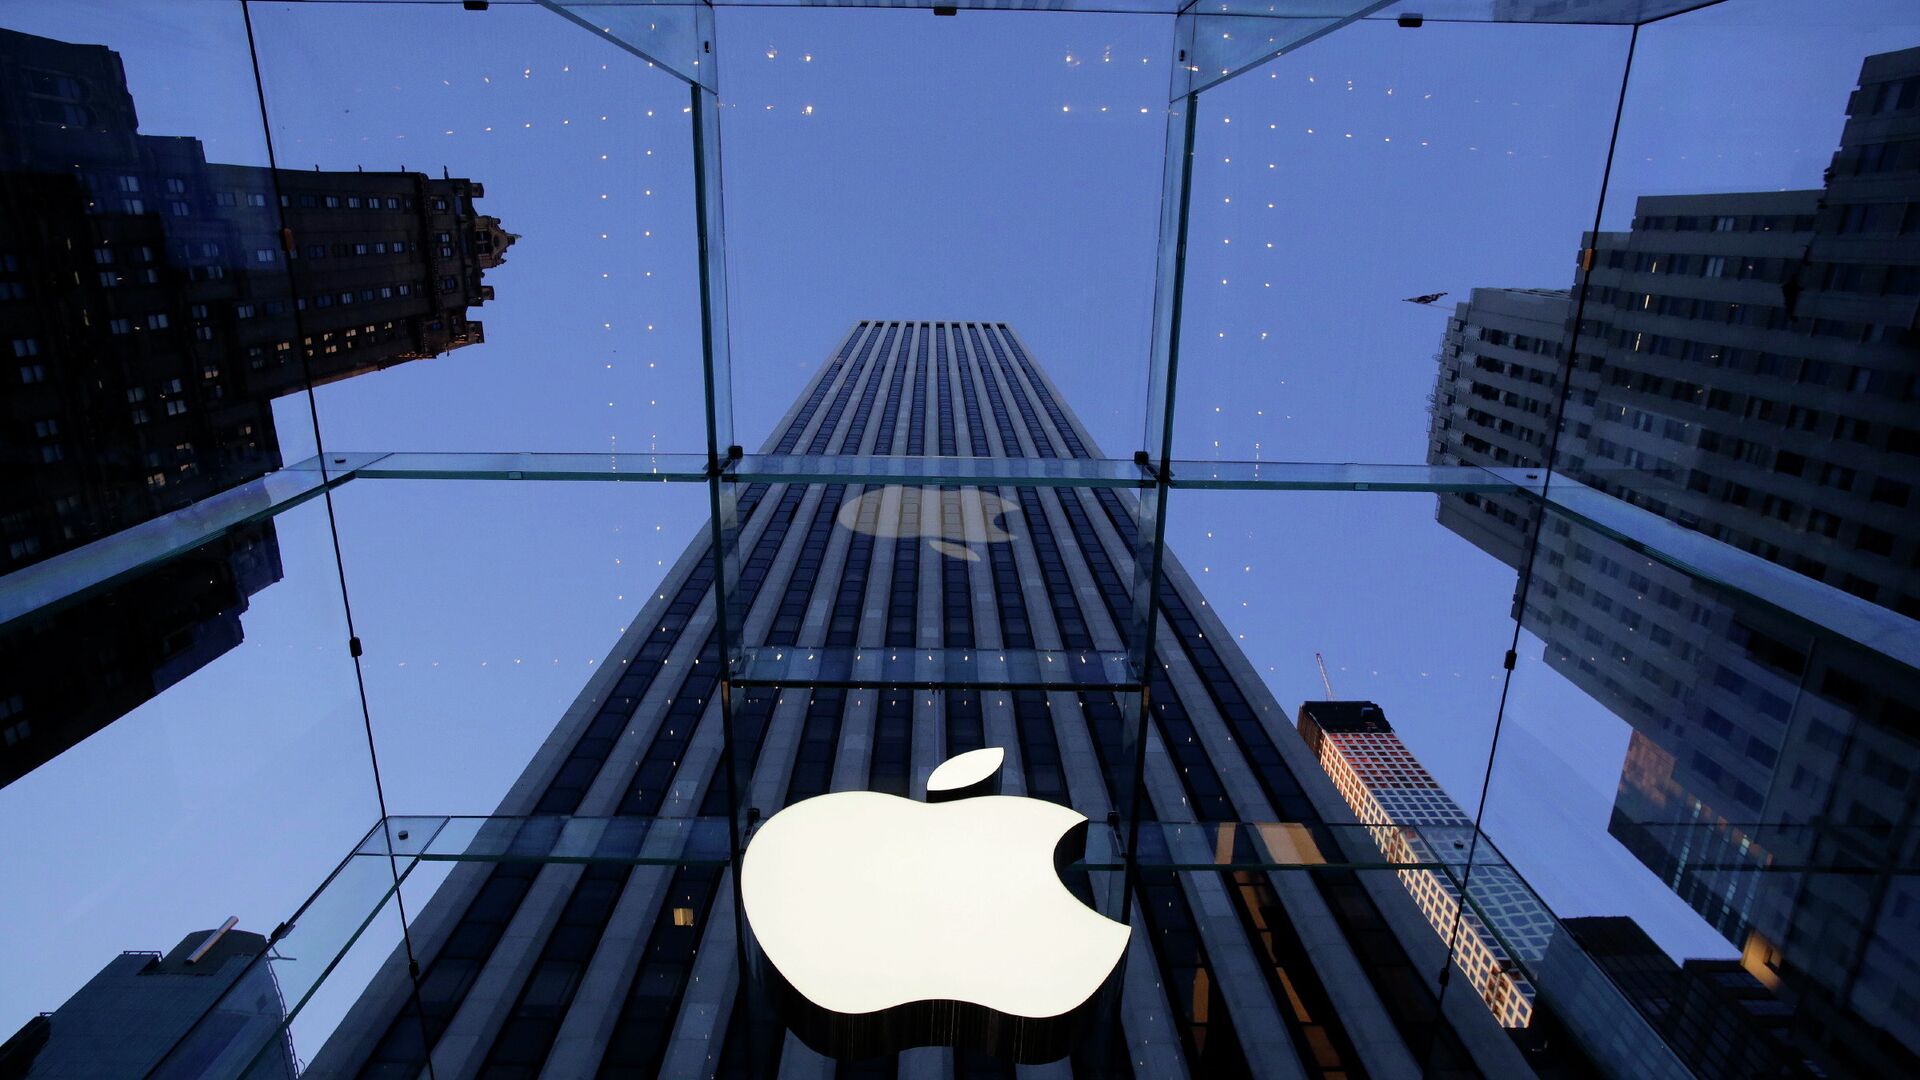 Логотип компании Apple над входом в здание в Нью-Йорке, США - РИА Новости, 1920, 08.09.2020